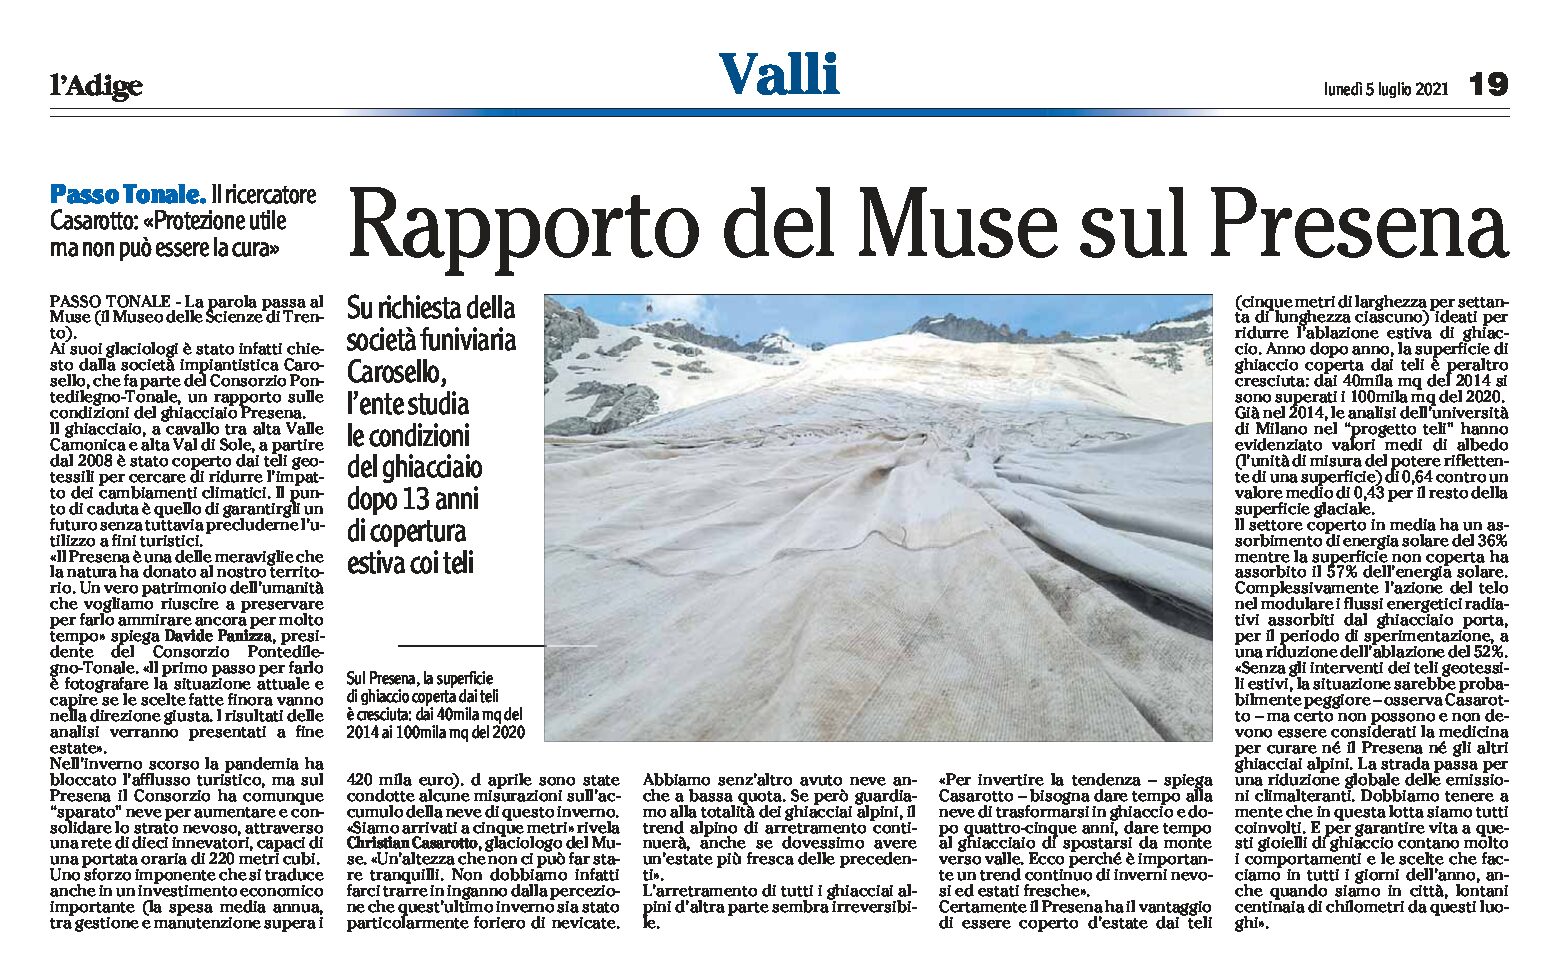 Passo Tonale: rapporto del Muse sul Presena. L’ente studia le condizioni del ghiacciaio dopo 13 anni di copertura estiva coi teli